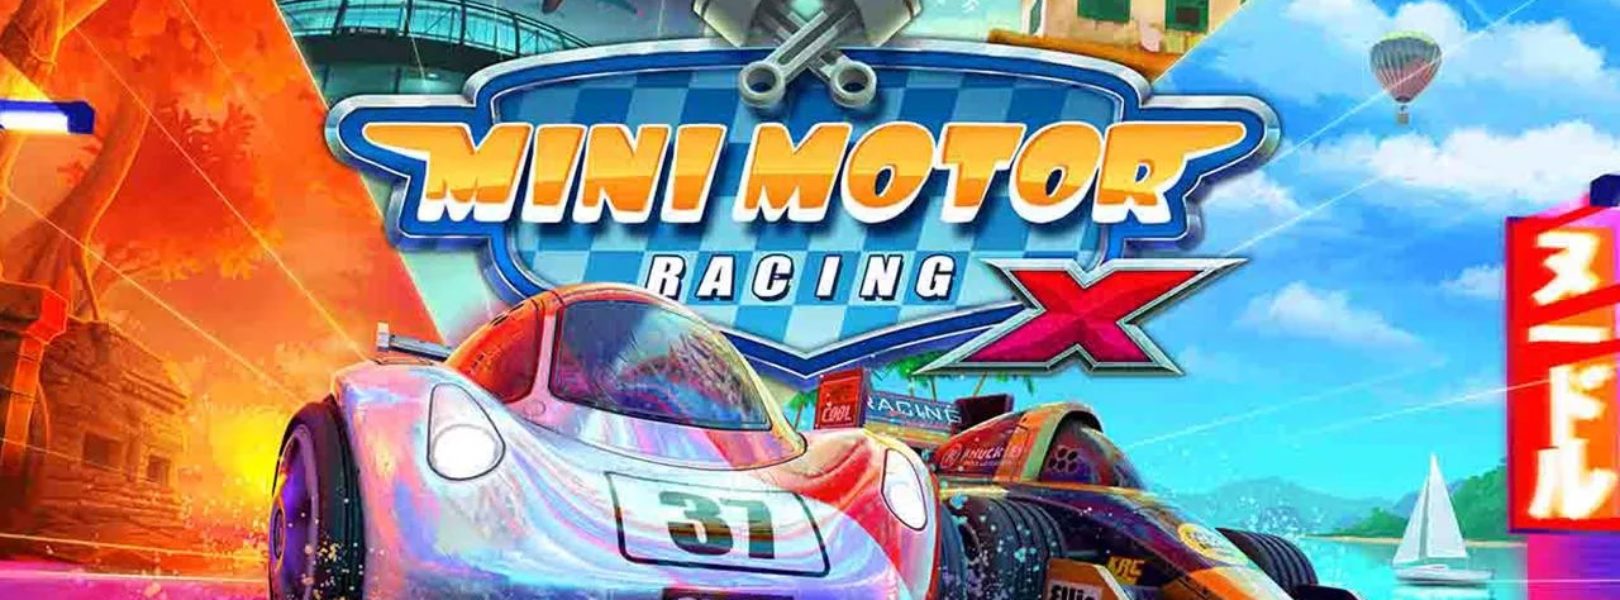 mini motor racing vr